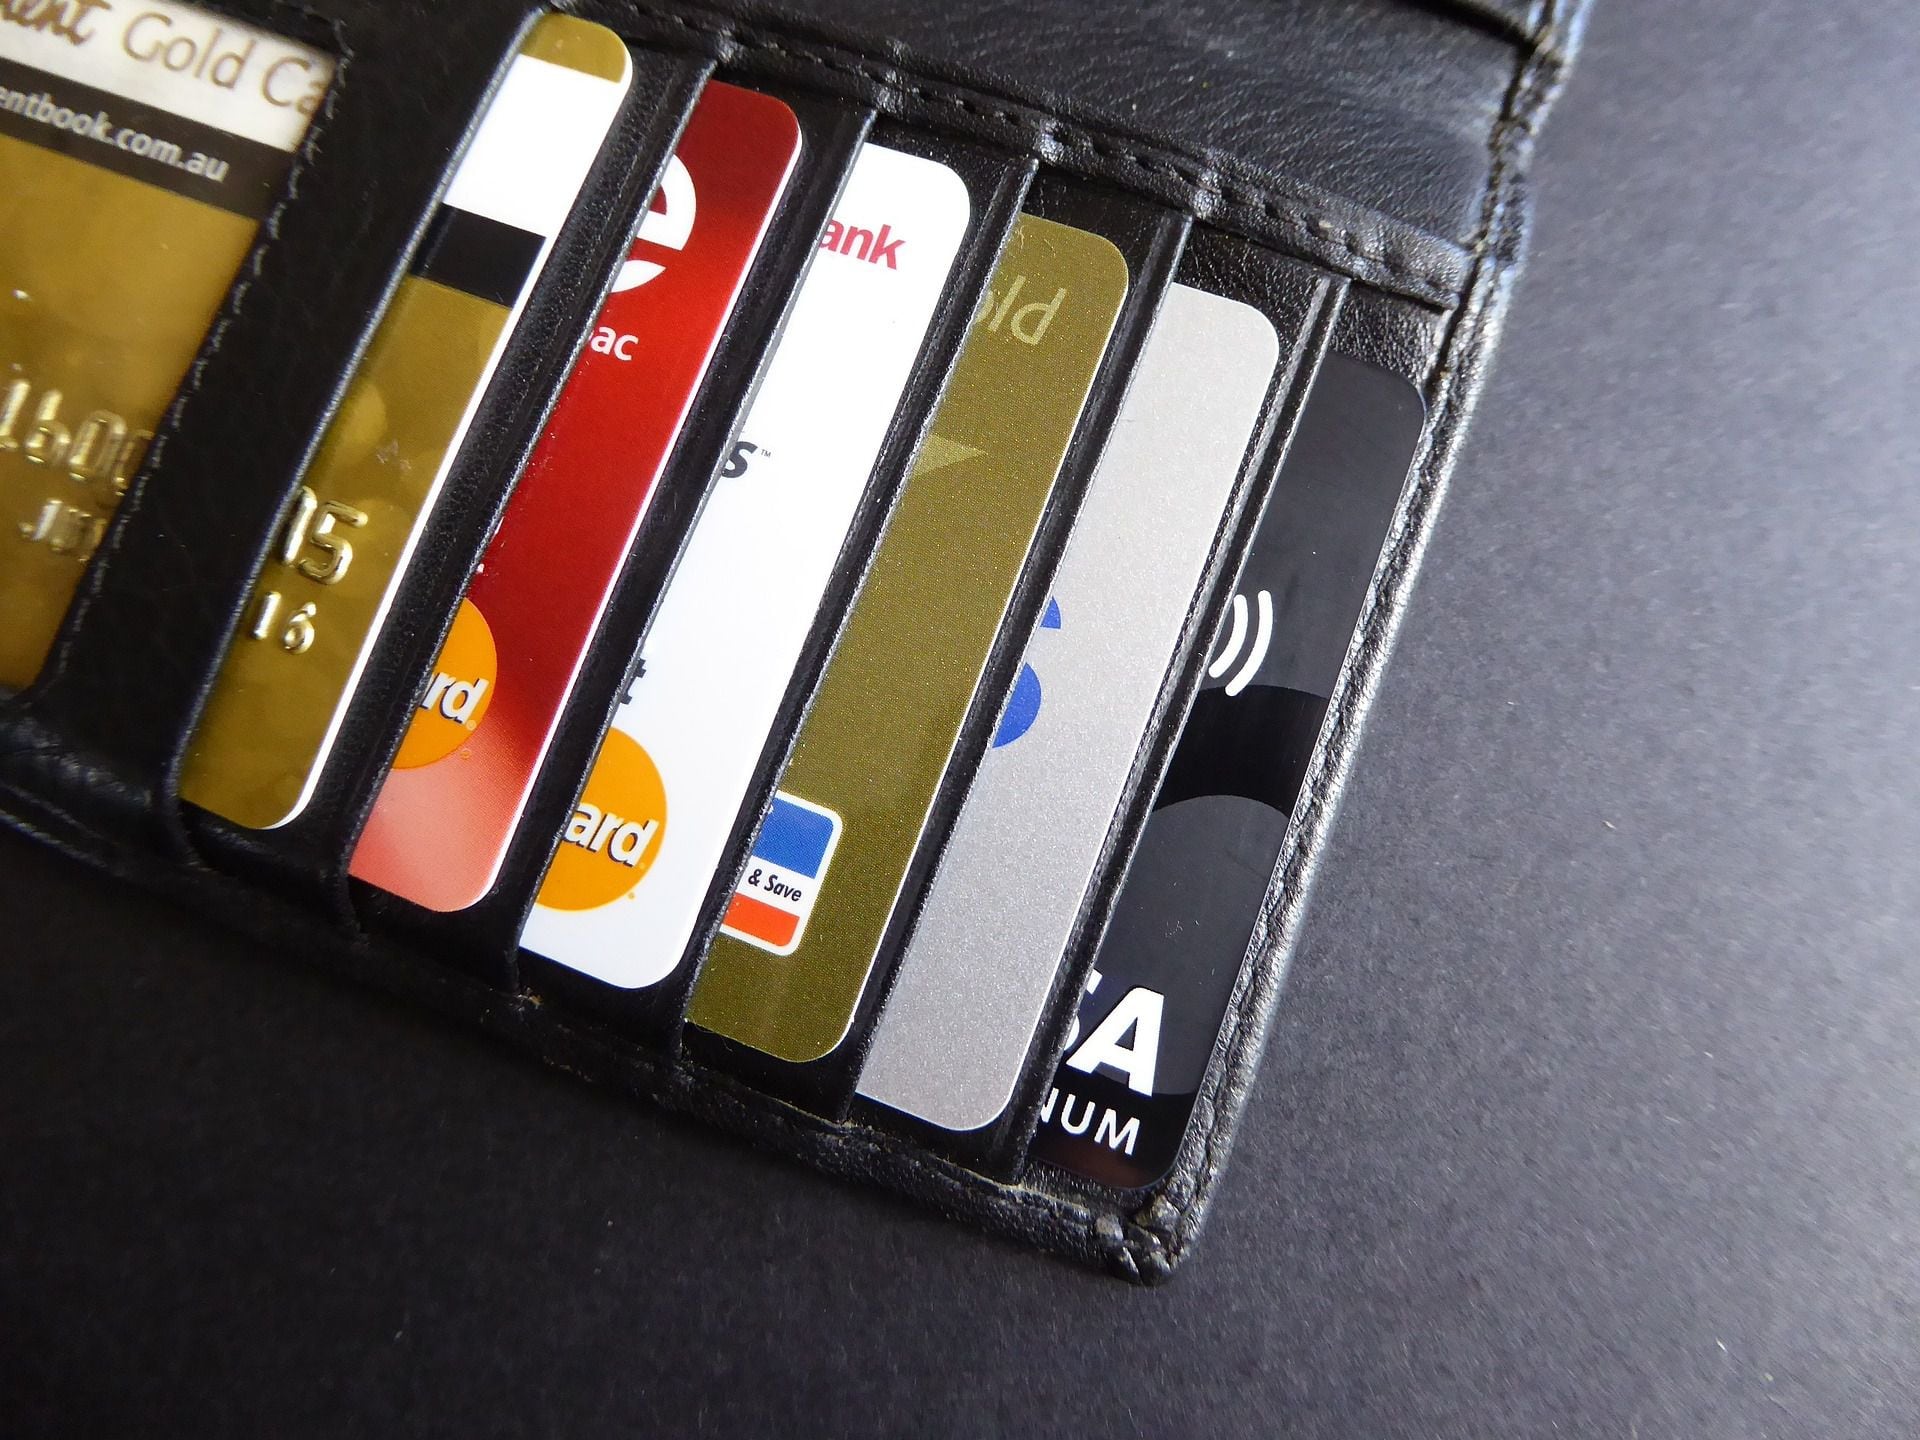 ¿Qué debo hacer cuando recibo dos tarjetas de débito o crédito o cuando registro consumos no autorizados? 